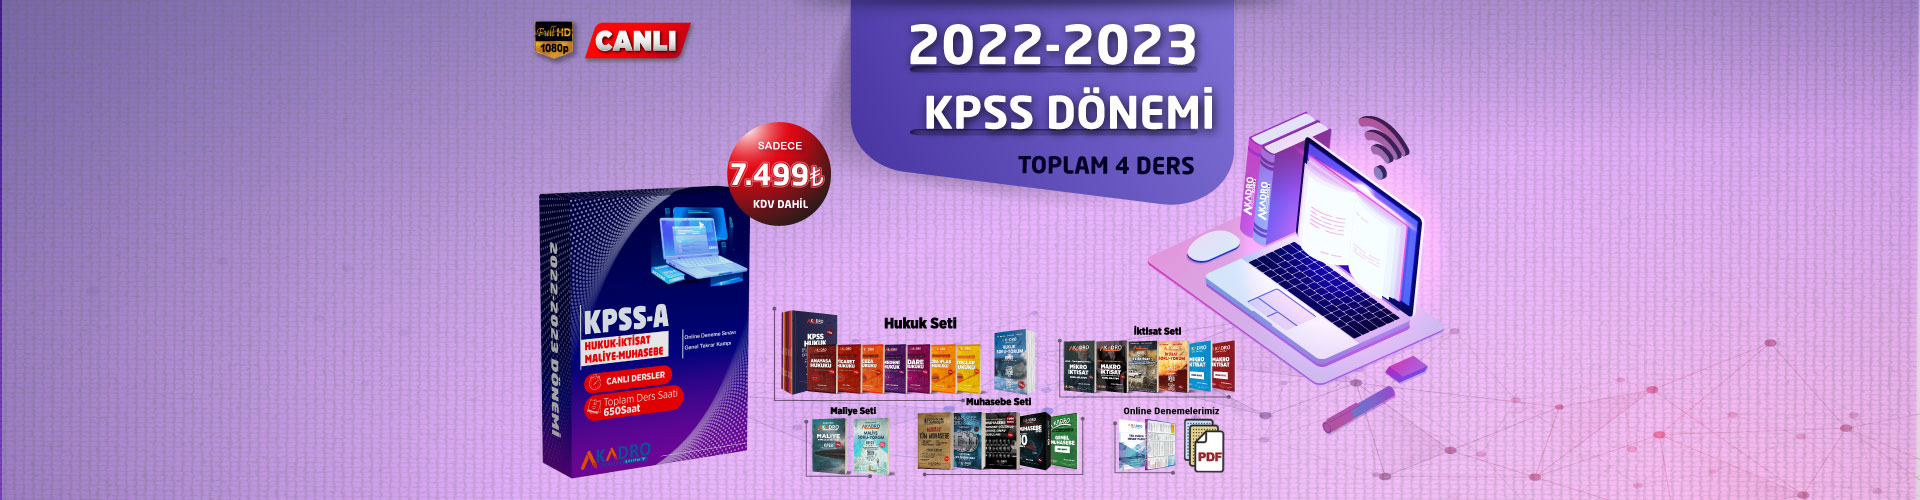 KPSS-A-2022-2023-4ders-EğitimSitesi